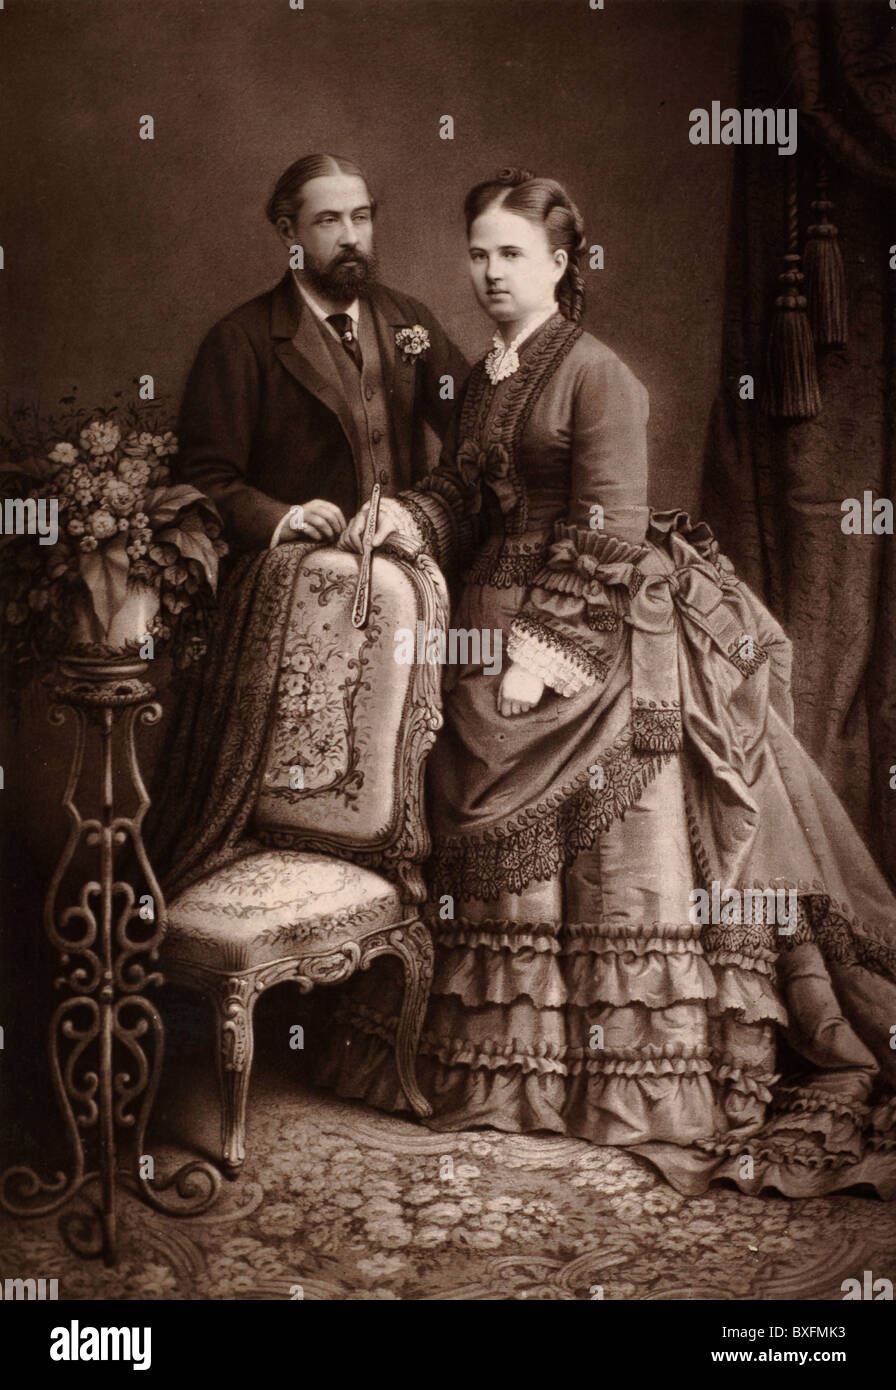 Prinz Alfred (1844-1900), Herzog von Edinburgh (2. Sohn von Königin Victoria), Herzog von Sachsen-Coburg & Gotha, und Großherzogin Maria Alexandrovna von Russland (1853-1920), zweite Tochter des Zaren Alexander II. Von Russland. Vintage-Foto C1875 Stockfoto